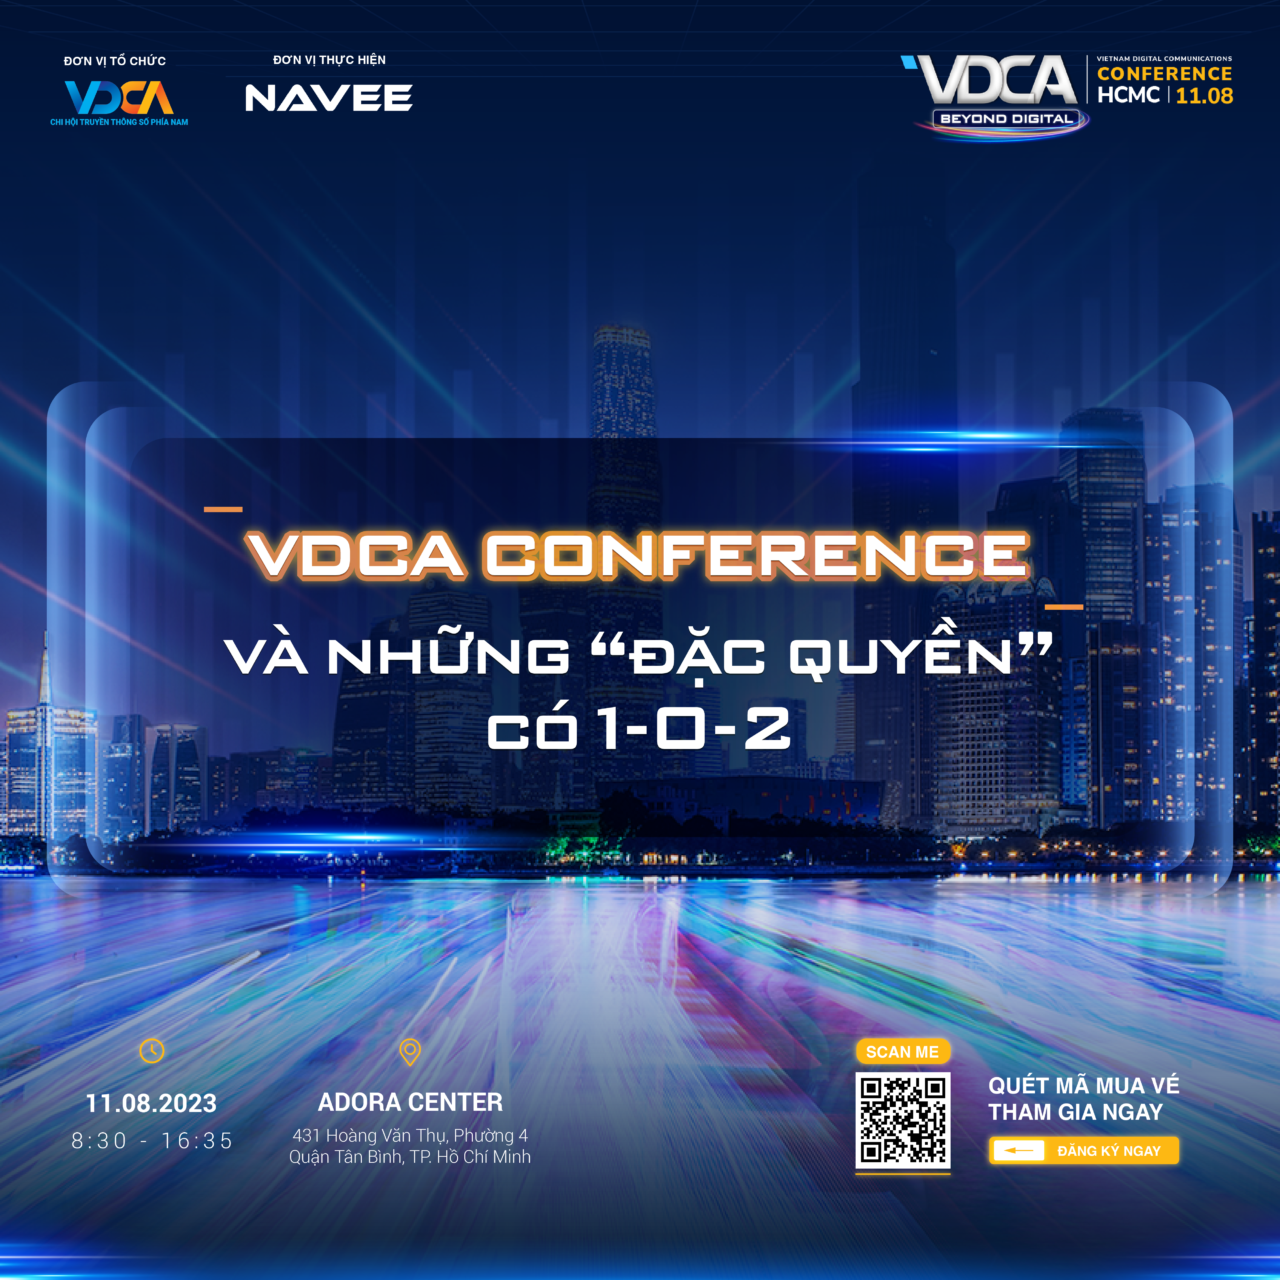 Những đặc quyền khi tham gia VDCA Conference